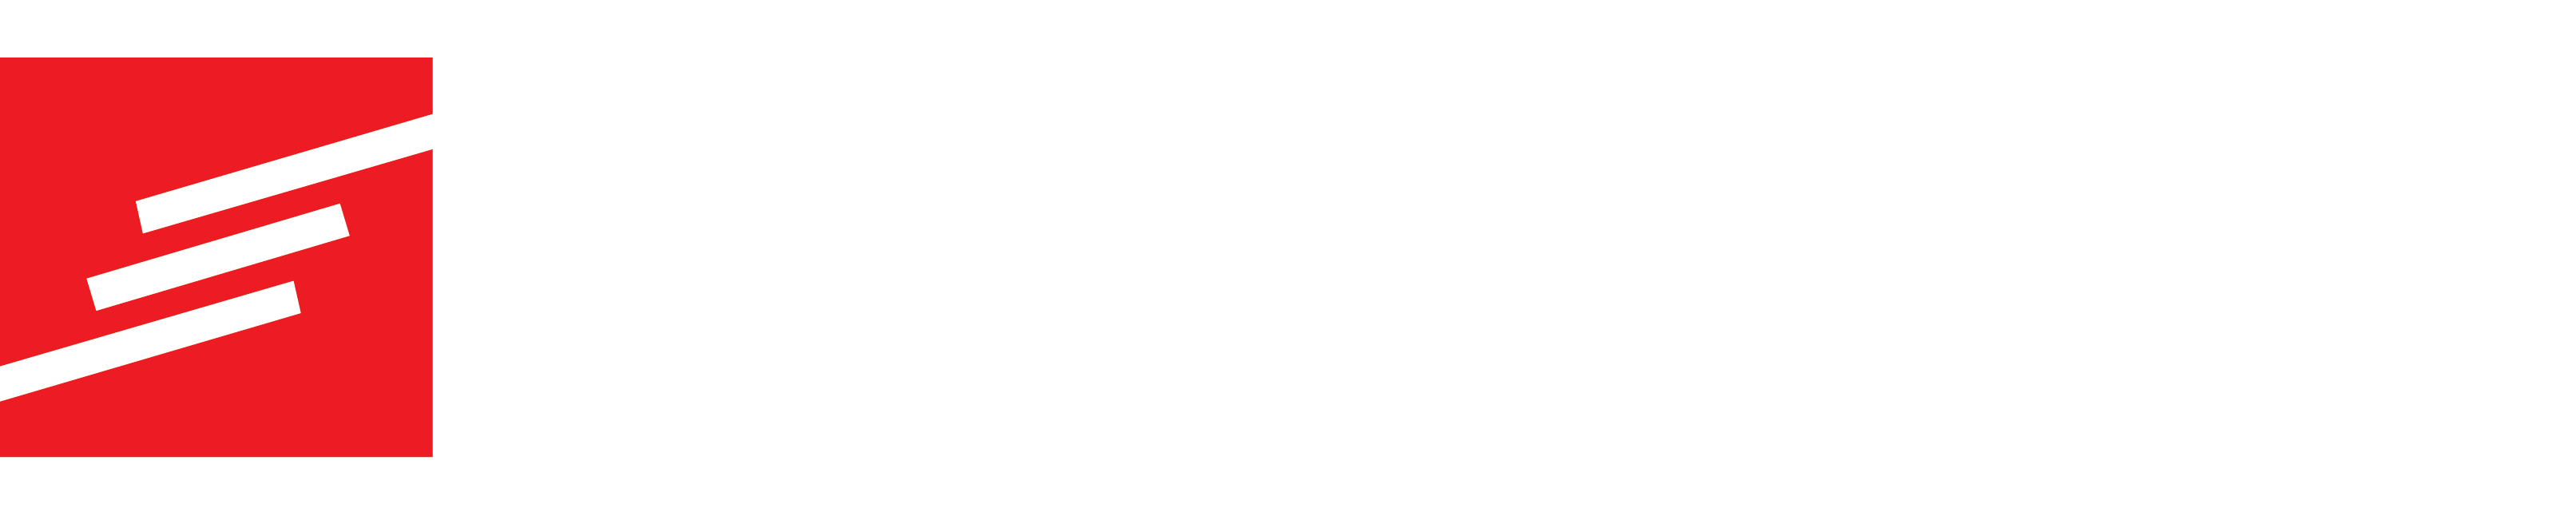 electroconex logo